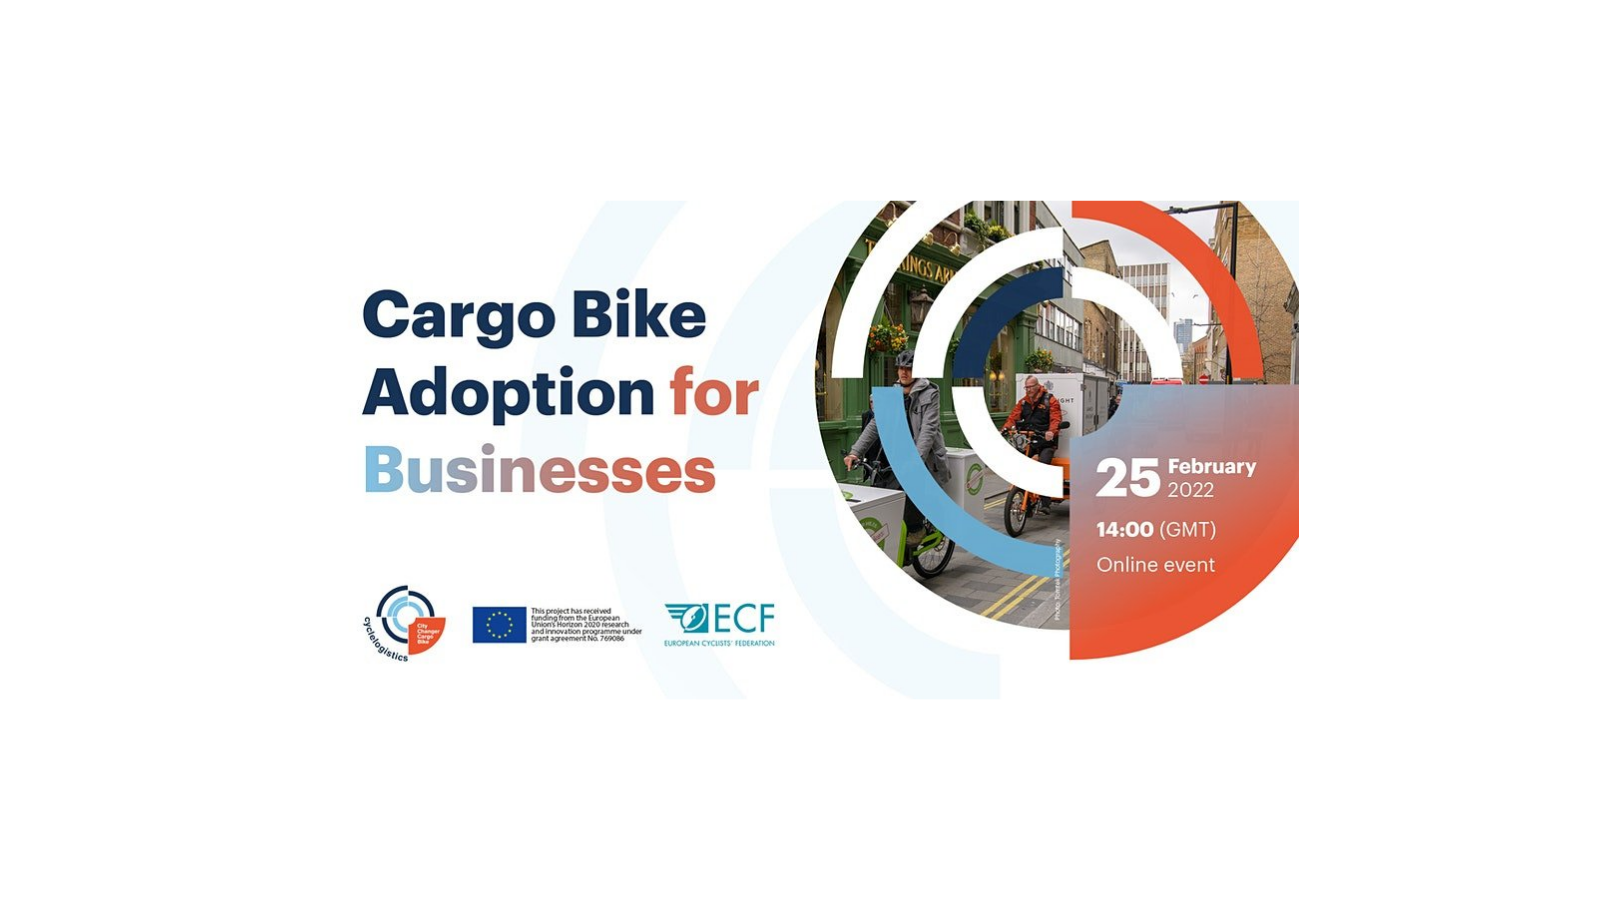 Cargo bike adoption for businesses